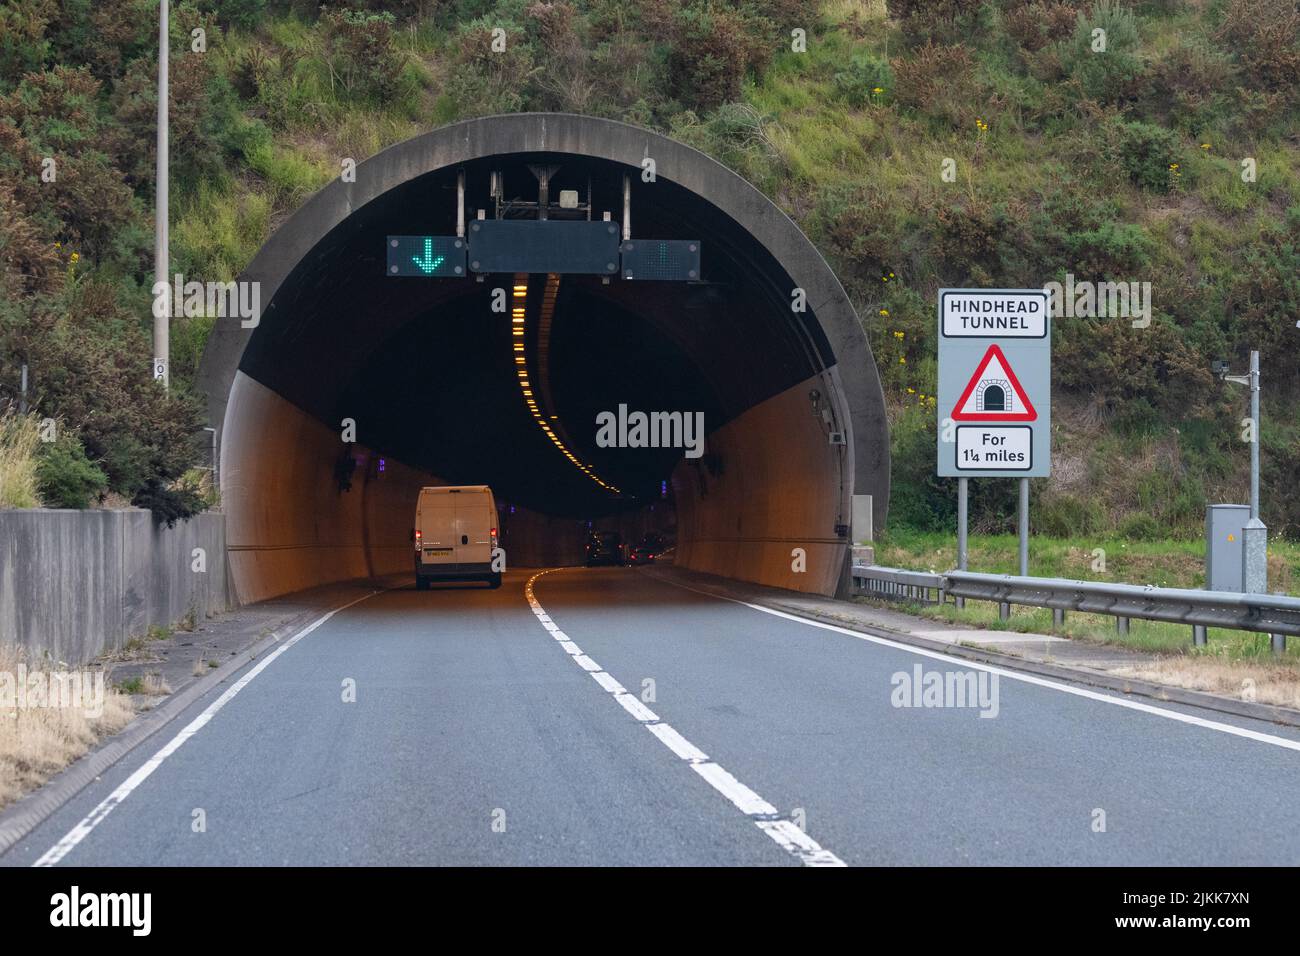 Tunnel de la route Hindhead, contournement de Hindhead, route principale A3, Hindhead, Surrey, Angleterre, Royaume-Uni Banque D'Images